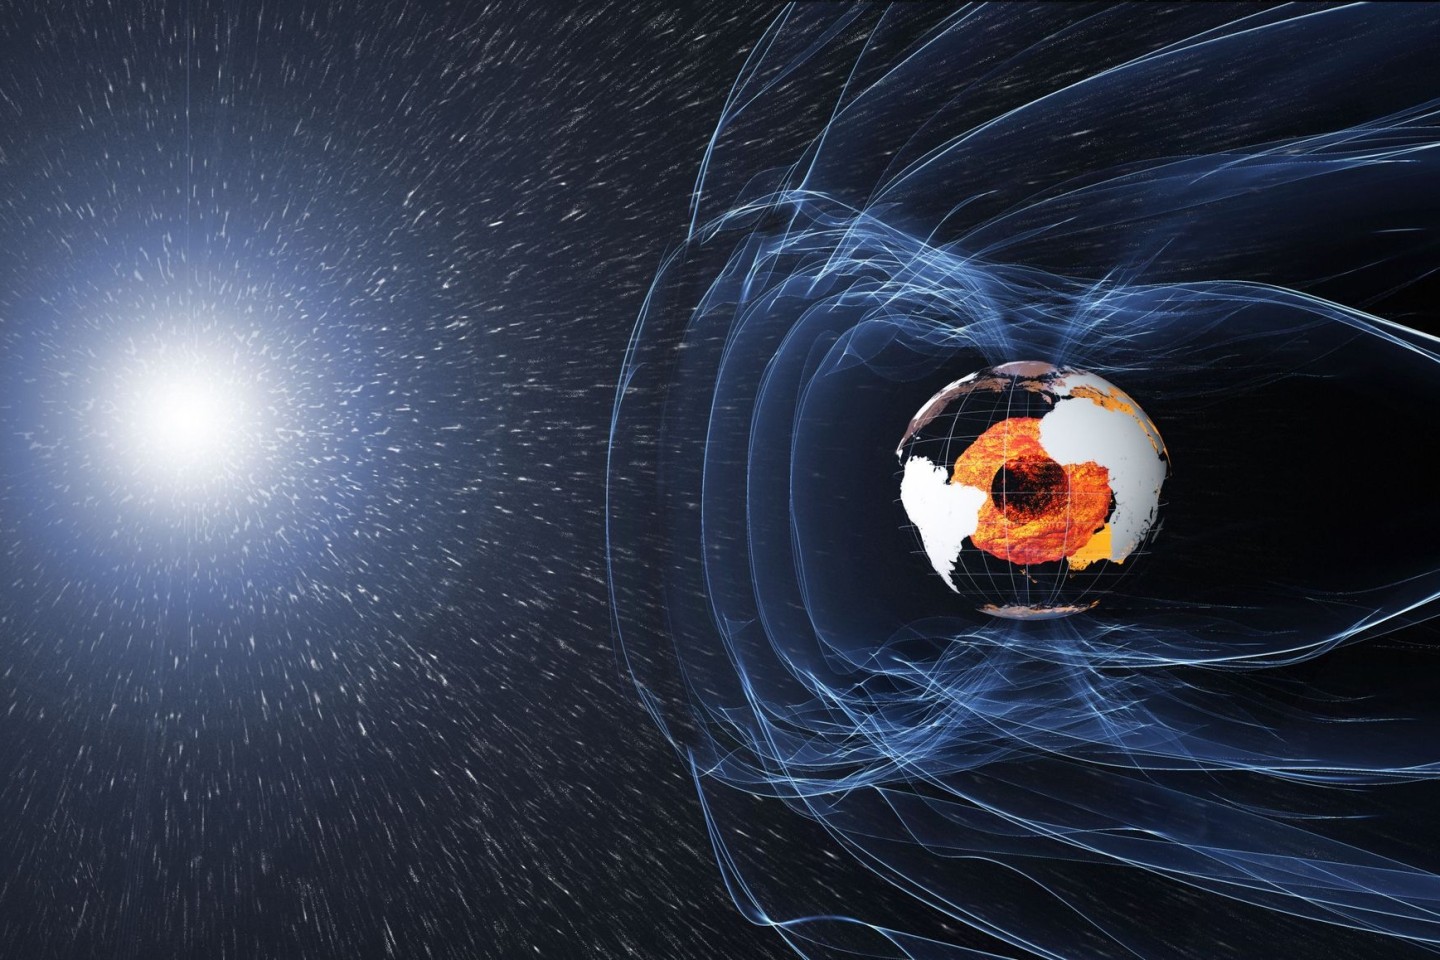 Das Magnetfeld und die elektrischen Ströme in und um die Erde erzeugen komplexe Kräfte (künstlerische Darstellung).